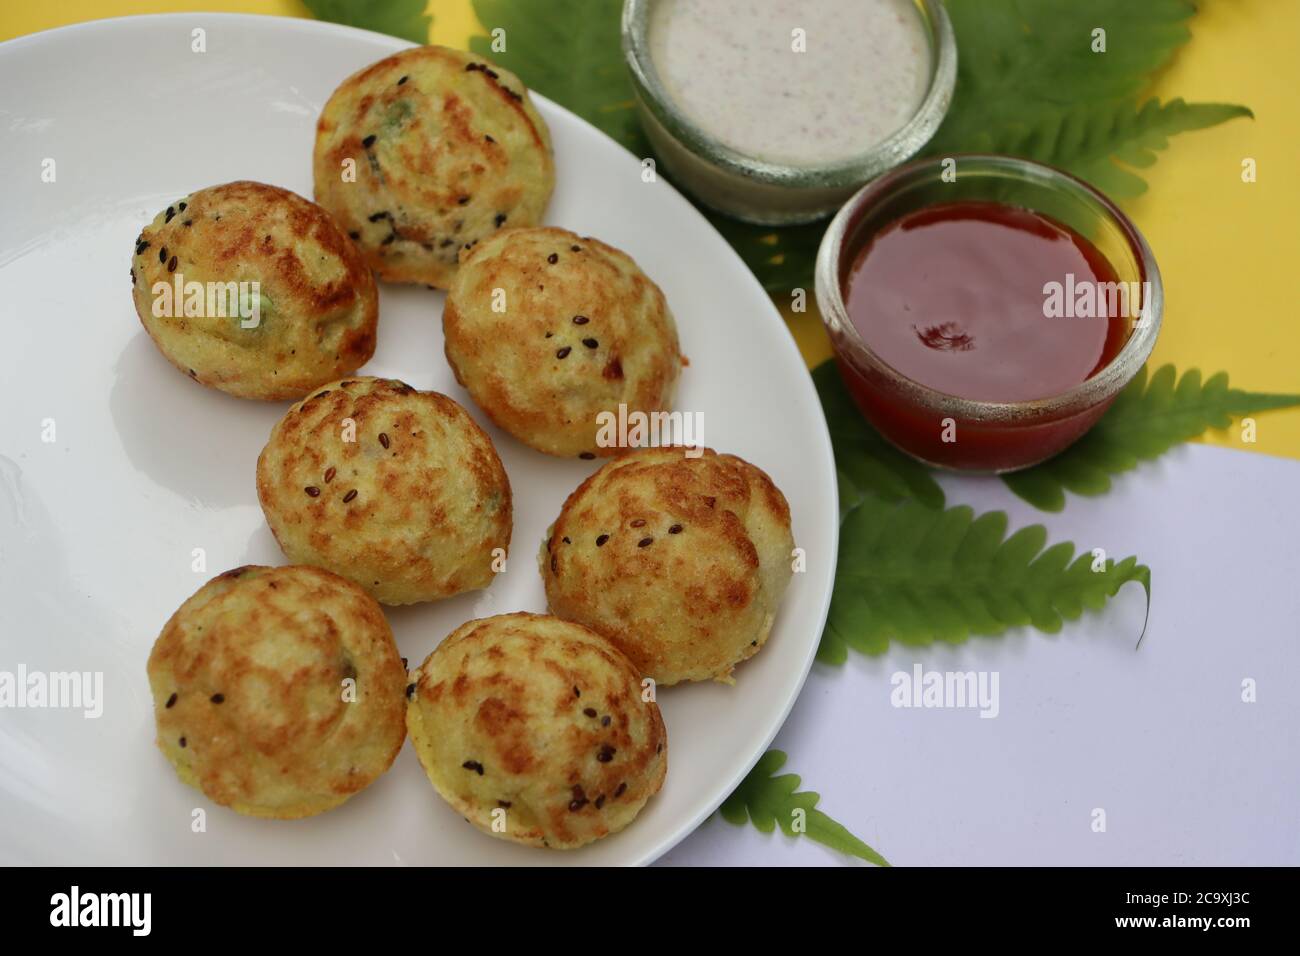 Appum oder Appe, Appam oder Mixed dal oder Rava Appe serviert mit grünem und rotem Chutney. Ein Ball Form beliebtes südindisches Frühstück Gericht, selektive Fokus Stockfoto